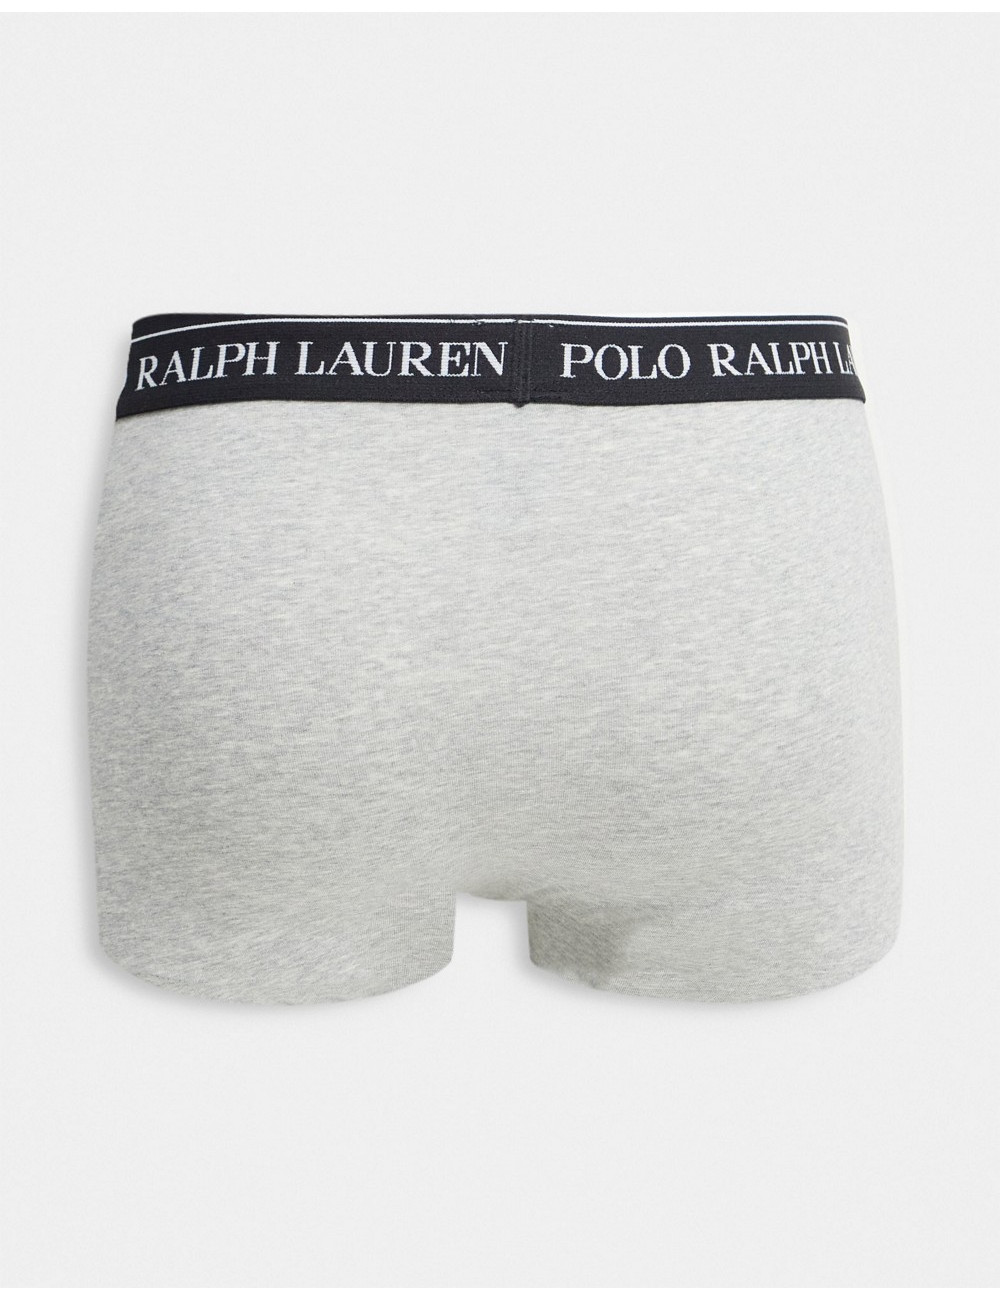 Polo Ralph Lauren 3 pack...